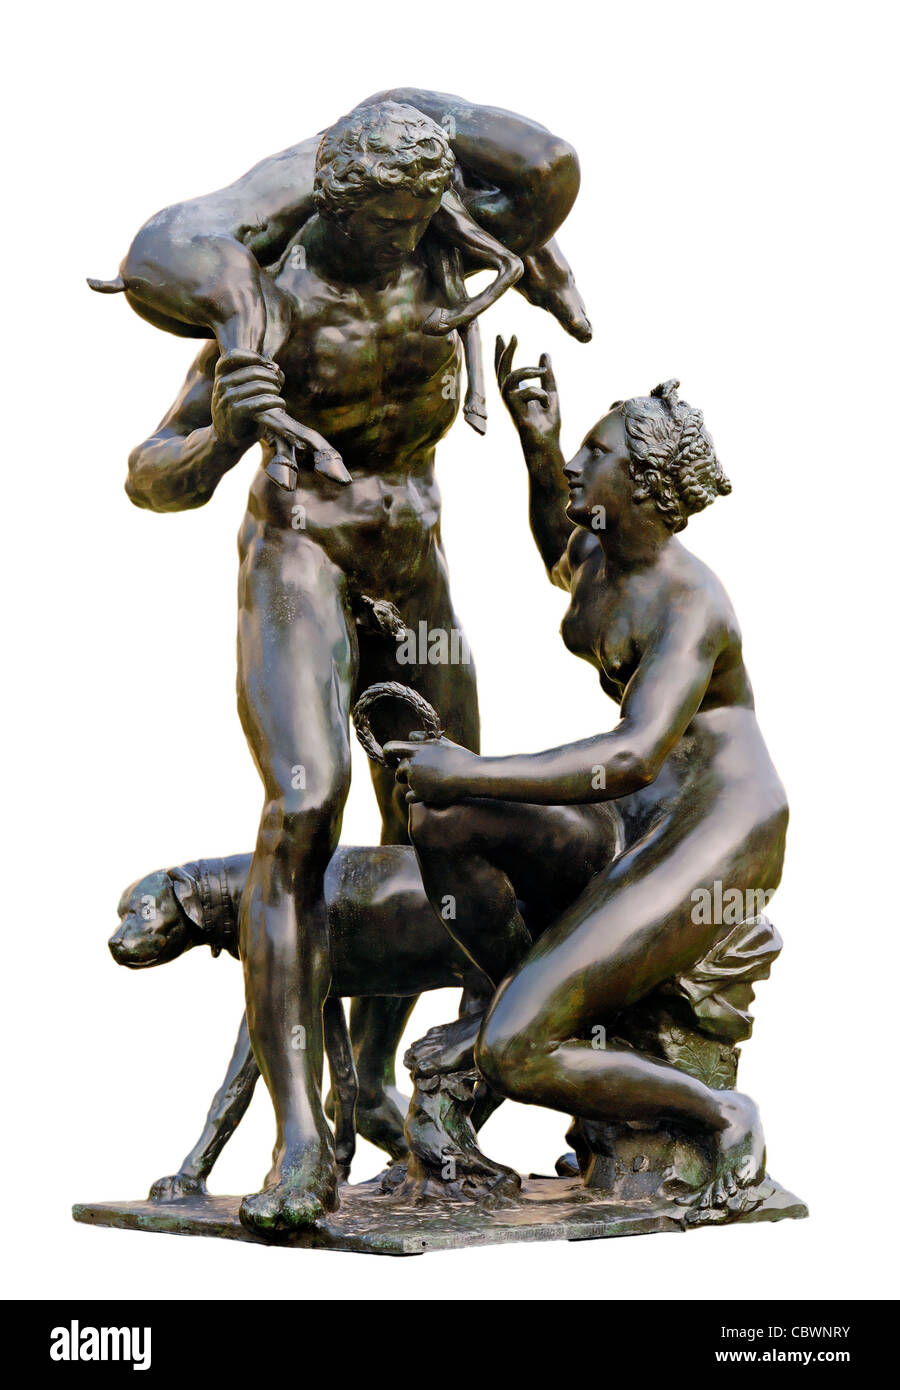 Prague, République tchèque. Jardins Wallenstein / Valdstejnska zahrada. Statue en bronze (Adriaen de Vries) Vénus et Adonis -1912 copie Banque D'Images